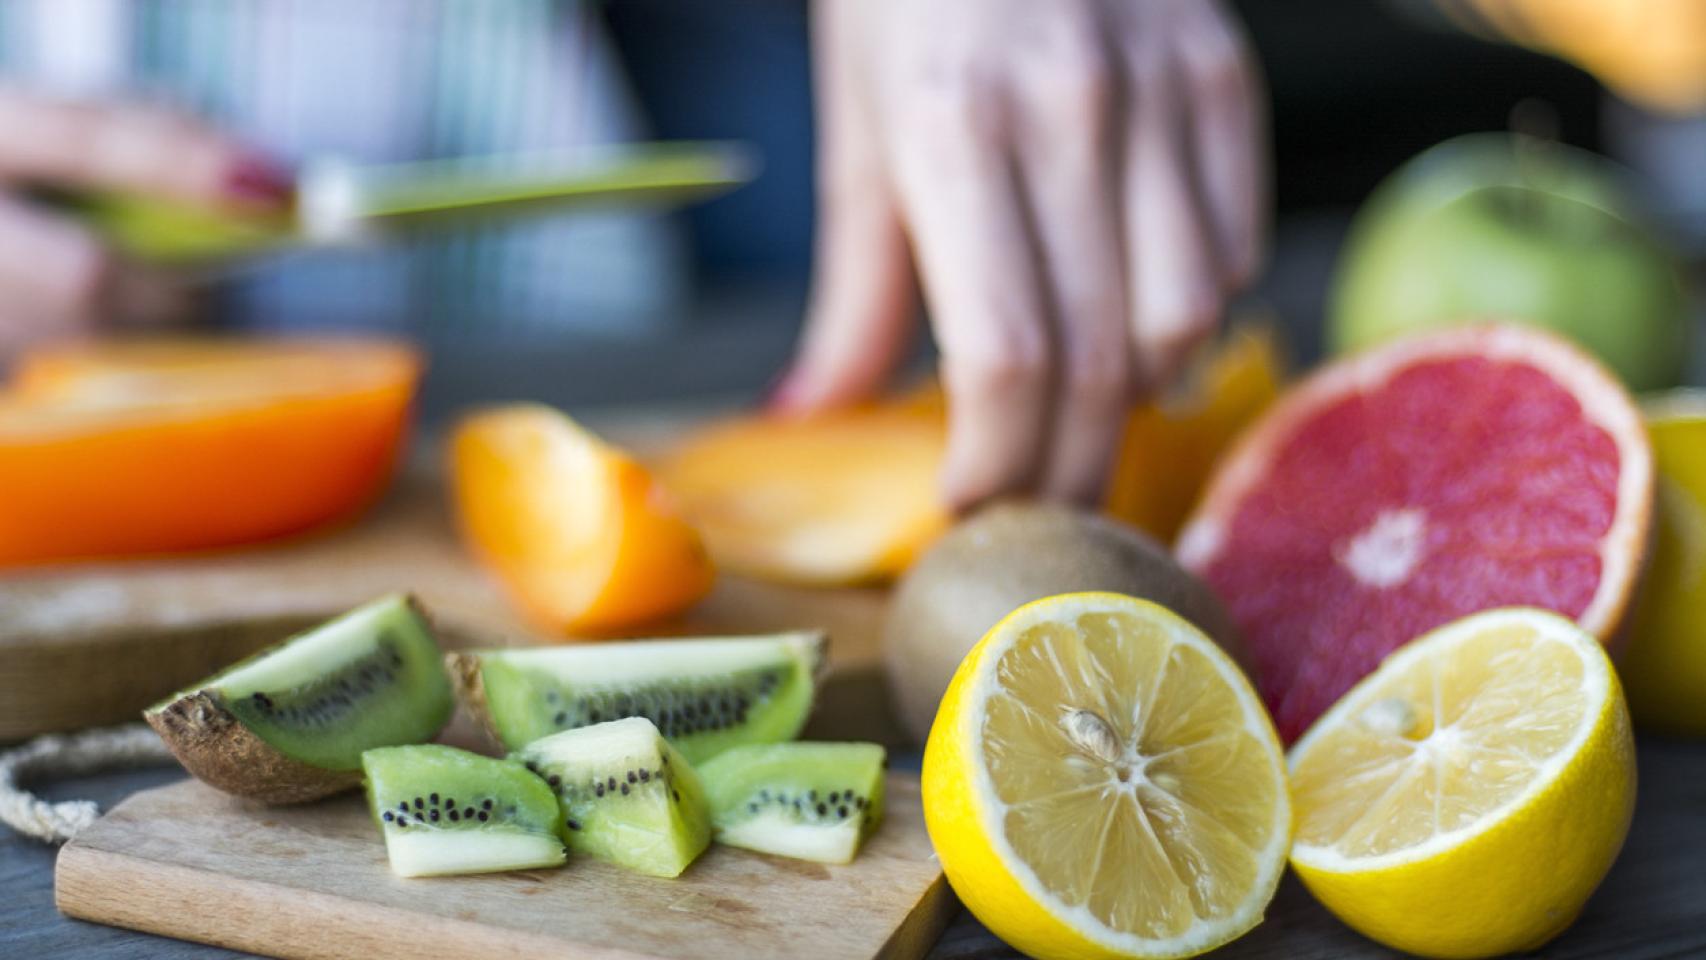 Defiéndete contra los resfriados, adelgaza y rejuvenece con esta fruta cargada de vitamina C